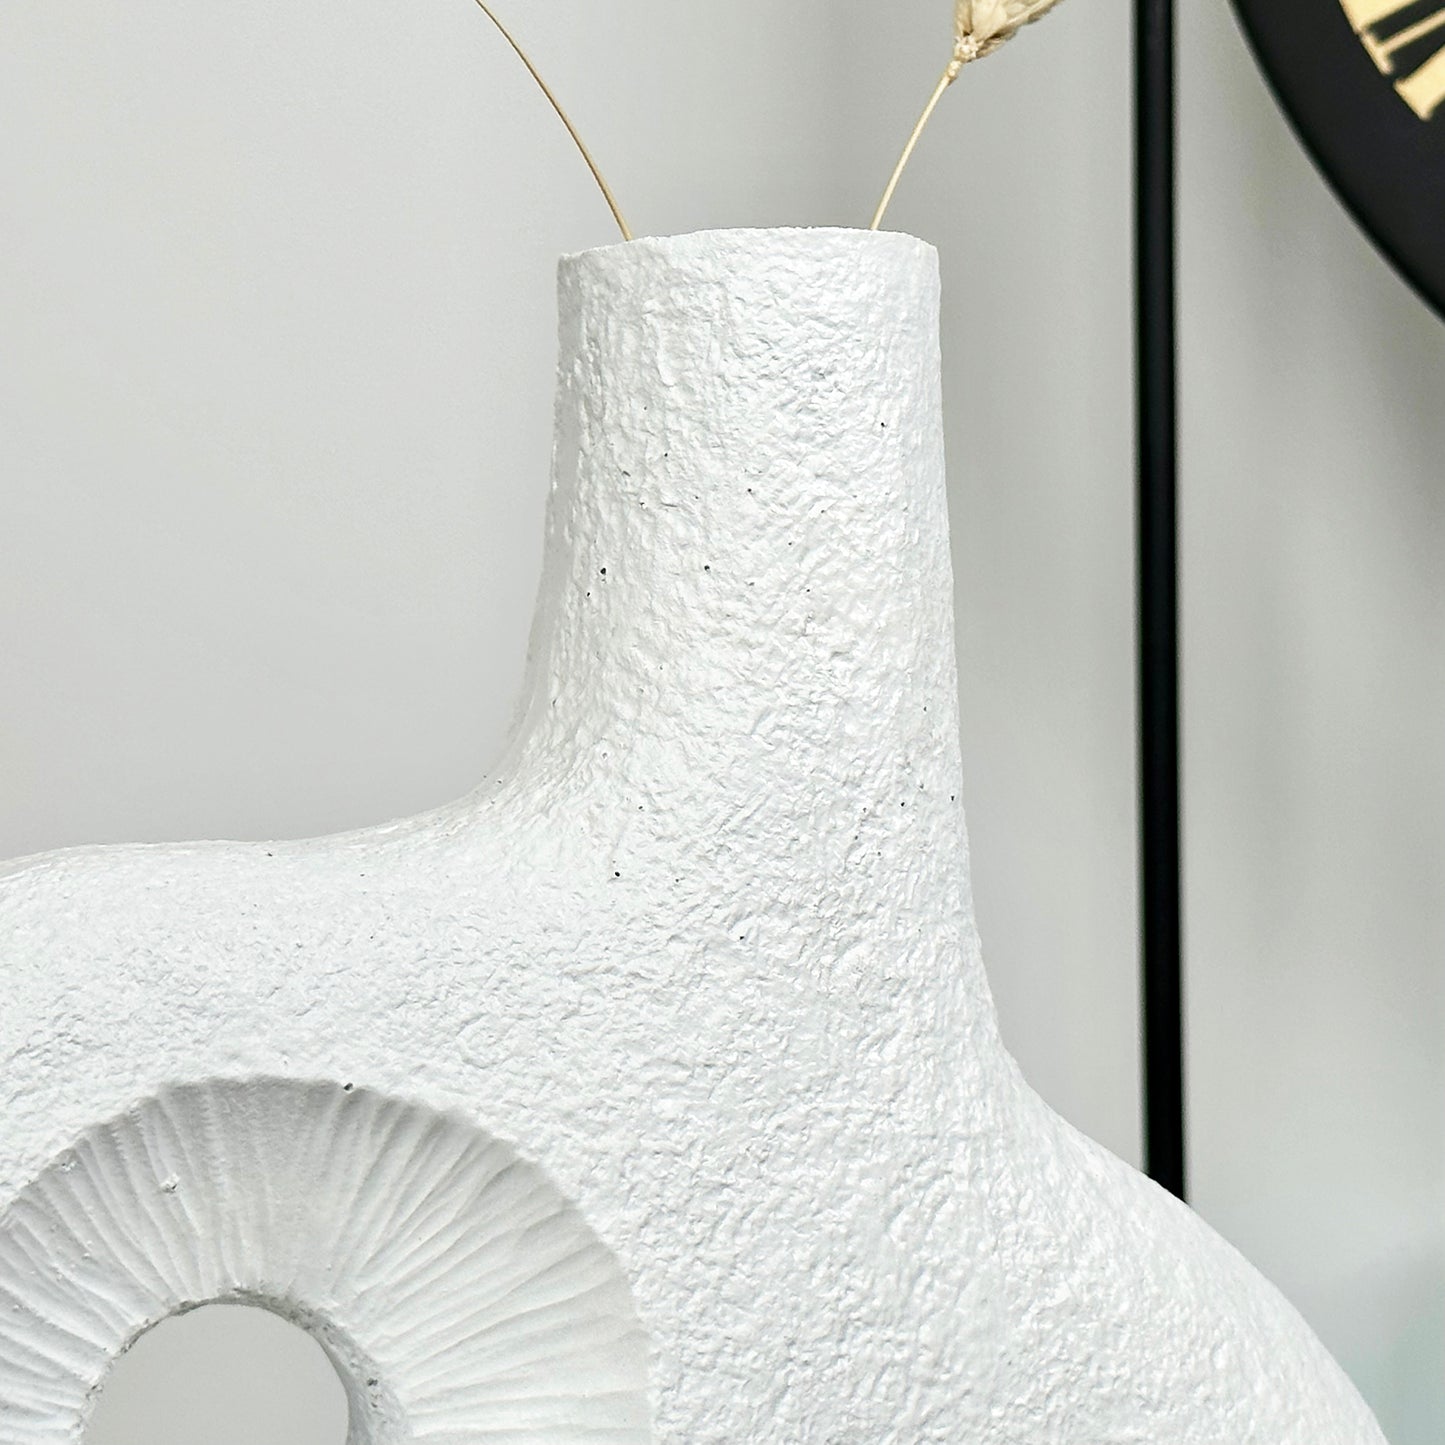 Weiße abstrakte unregelmäßige Donut-Vase